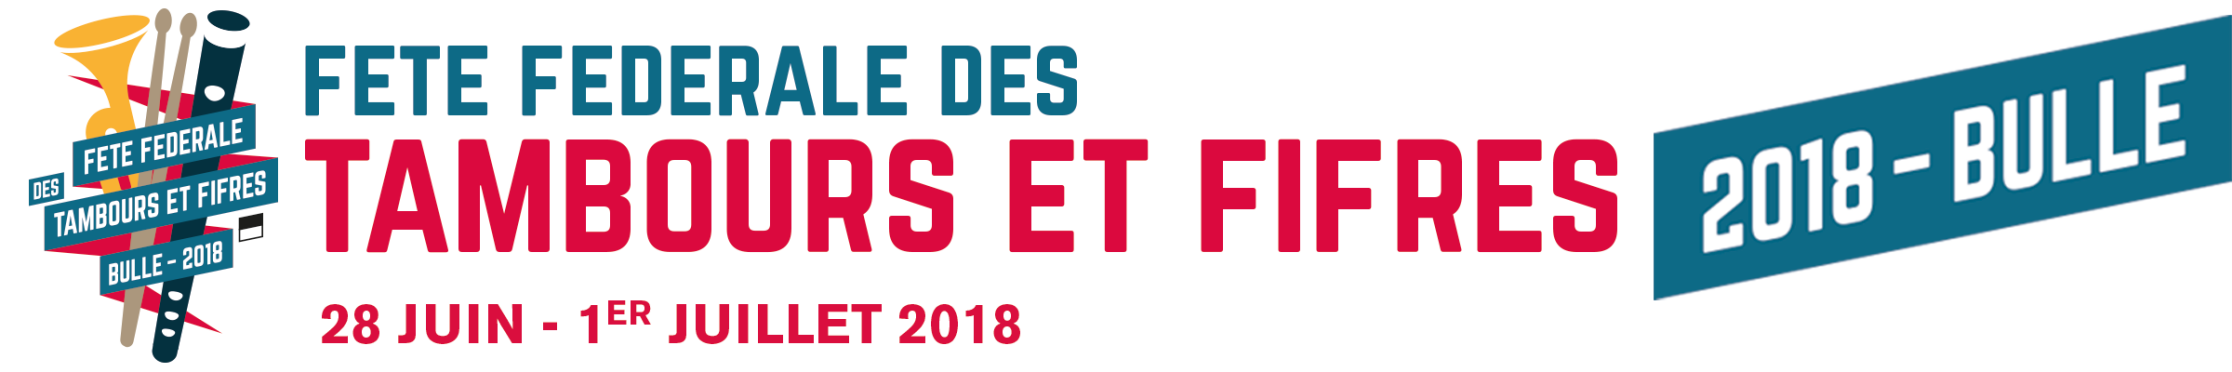 Fête Fédérale des Tambours et Fifres - Bulle 2018